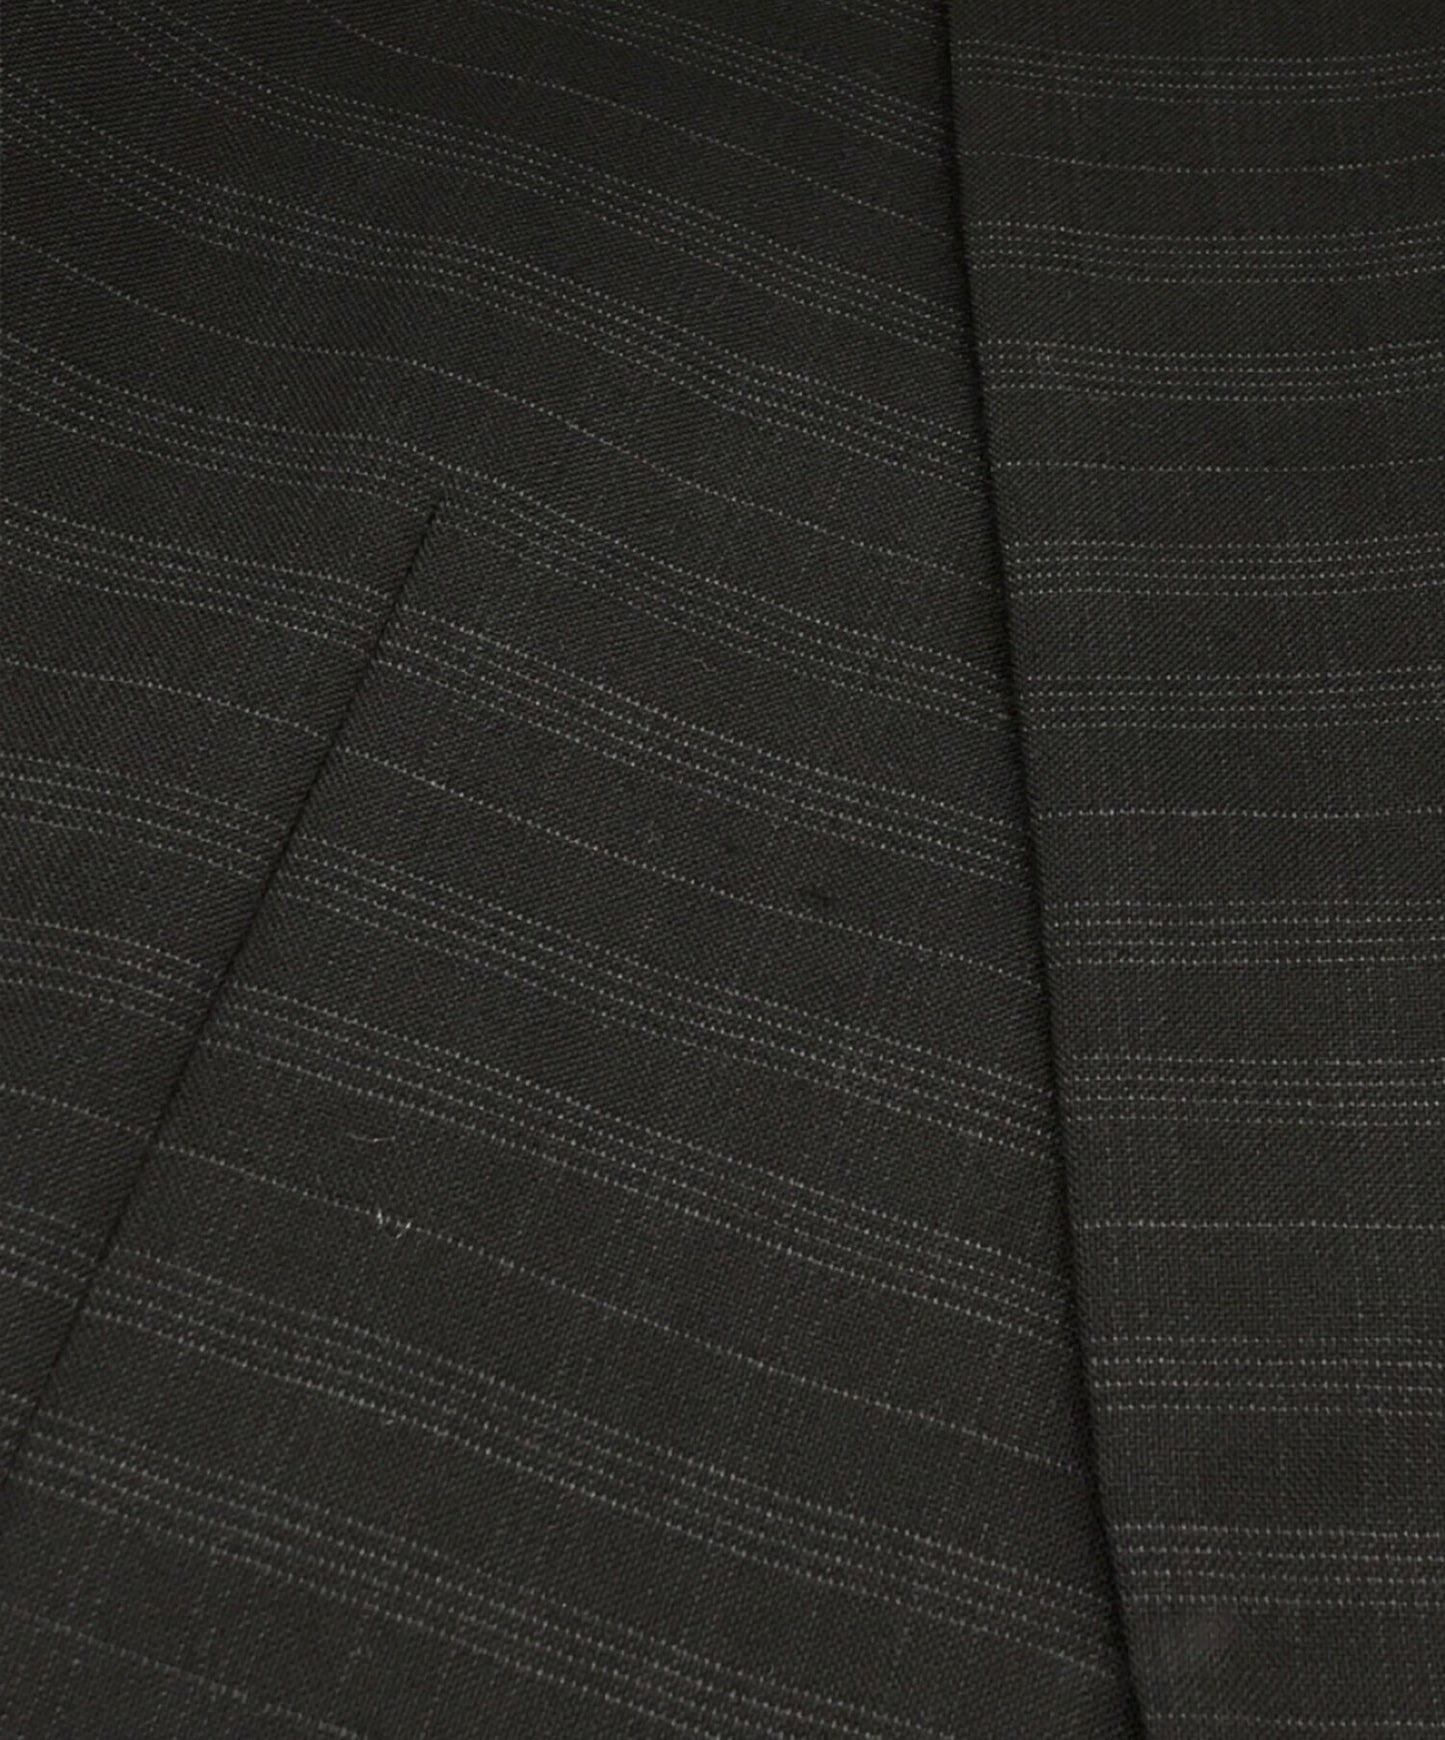 COMME des GARCONS HOMME DEUX suit that can be worn as a set-up DM-J076/DM-P057